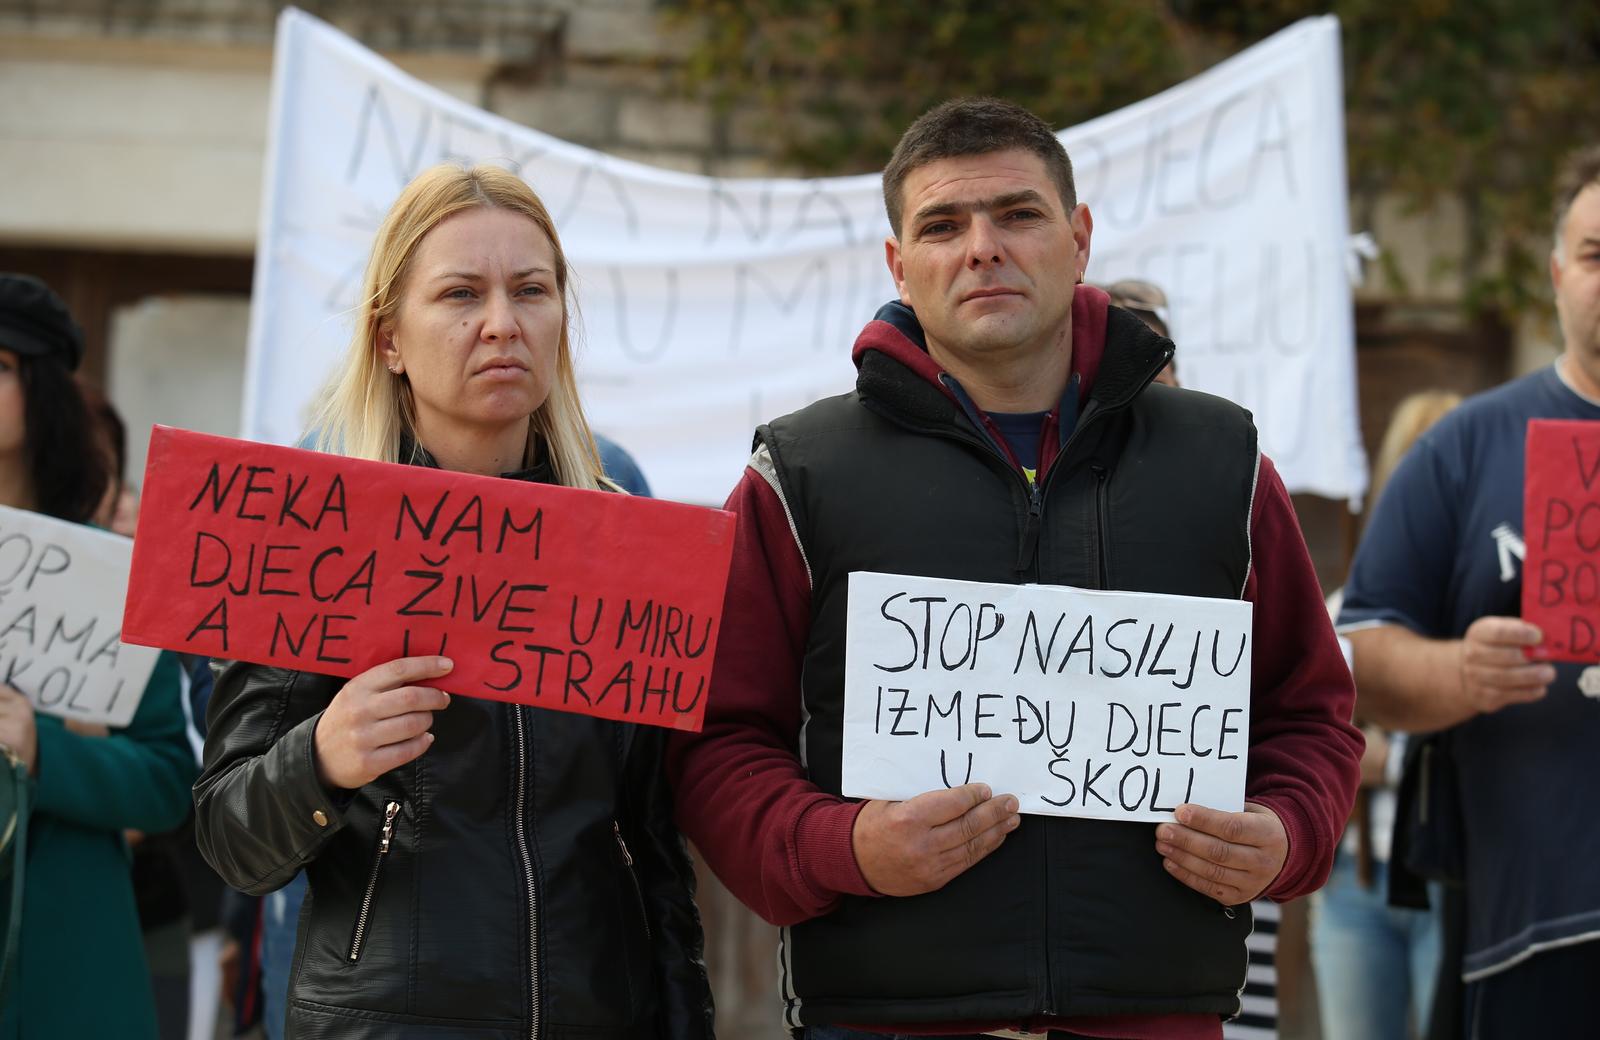 Pučišća: Slab odaziv na prosvjed protiv nasilja u školi 05.11.2018., Pucisca, Brac - Prosvjed protiv nasilja u skoli okupio je, uz roditelje djecaka zrtve vrsnjackog nasilja, tek nekoliko prosvjednika.rrPhoto: Ivo Cagalj/PIXSEL